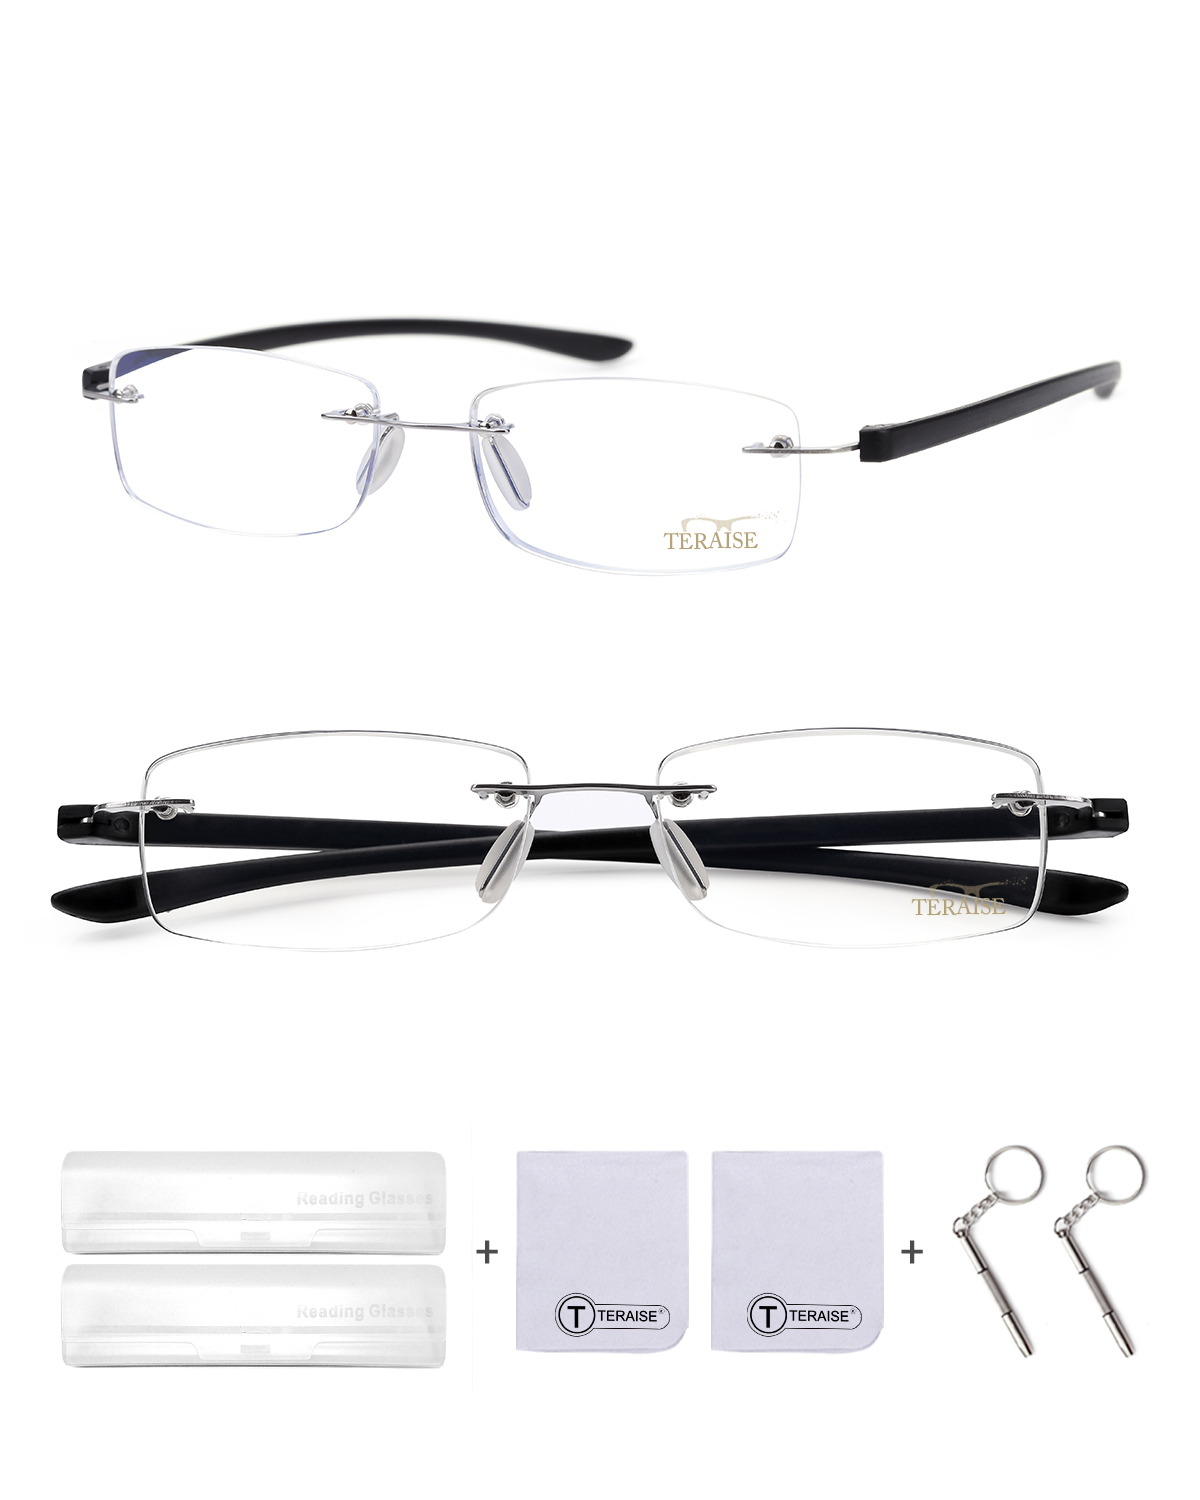 Business Frameless Reading Glasses model #5264522-TERAISE